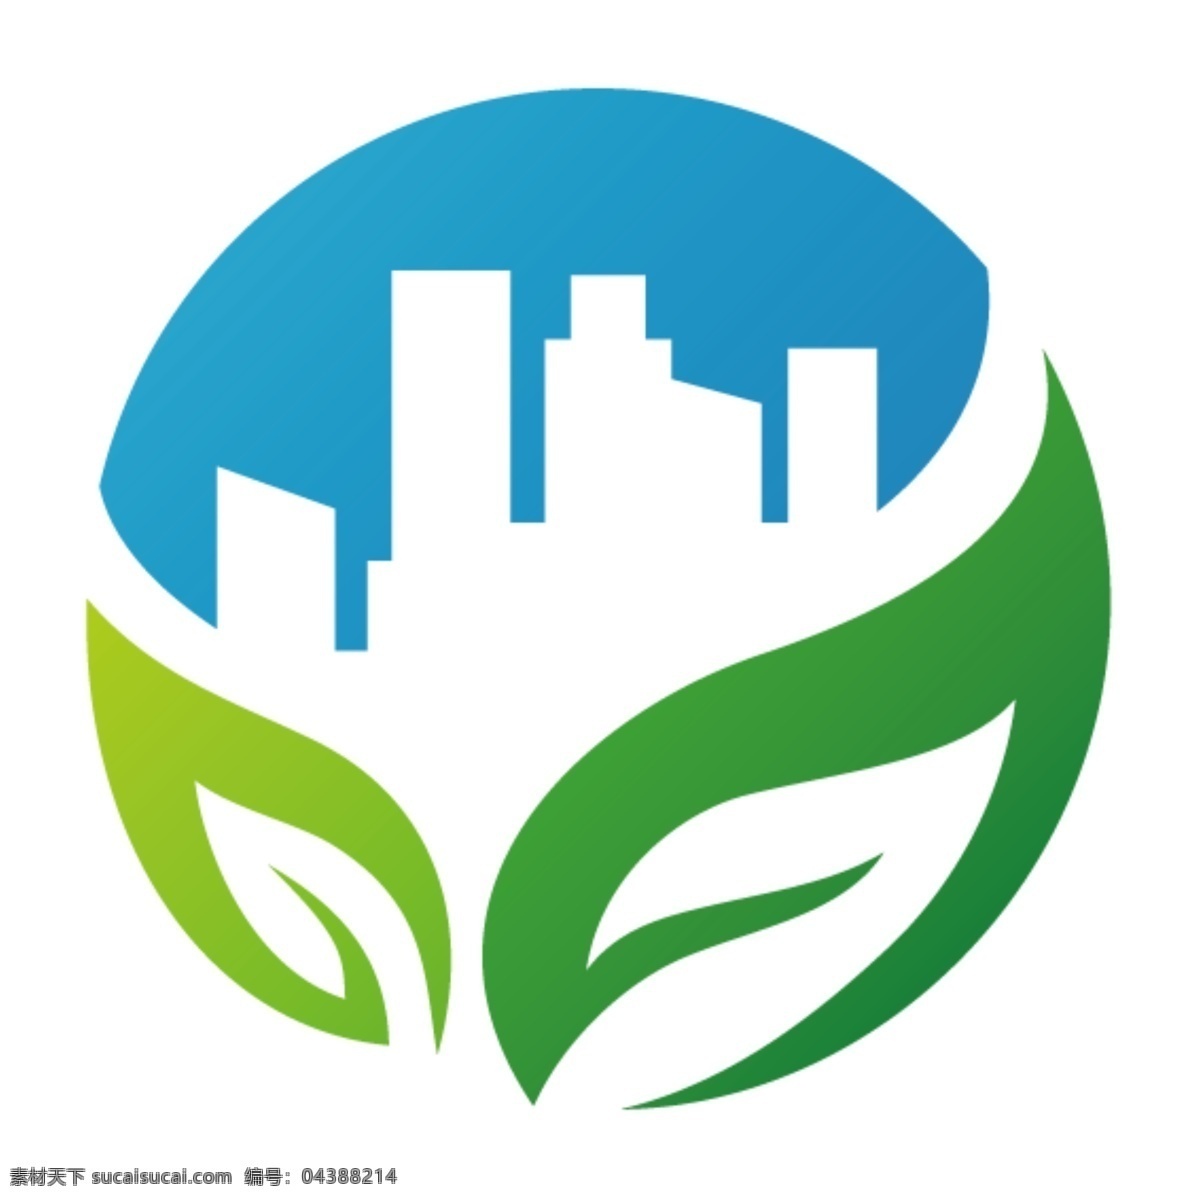 环保 logo 素材图片 环保logo 标志素材